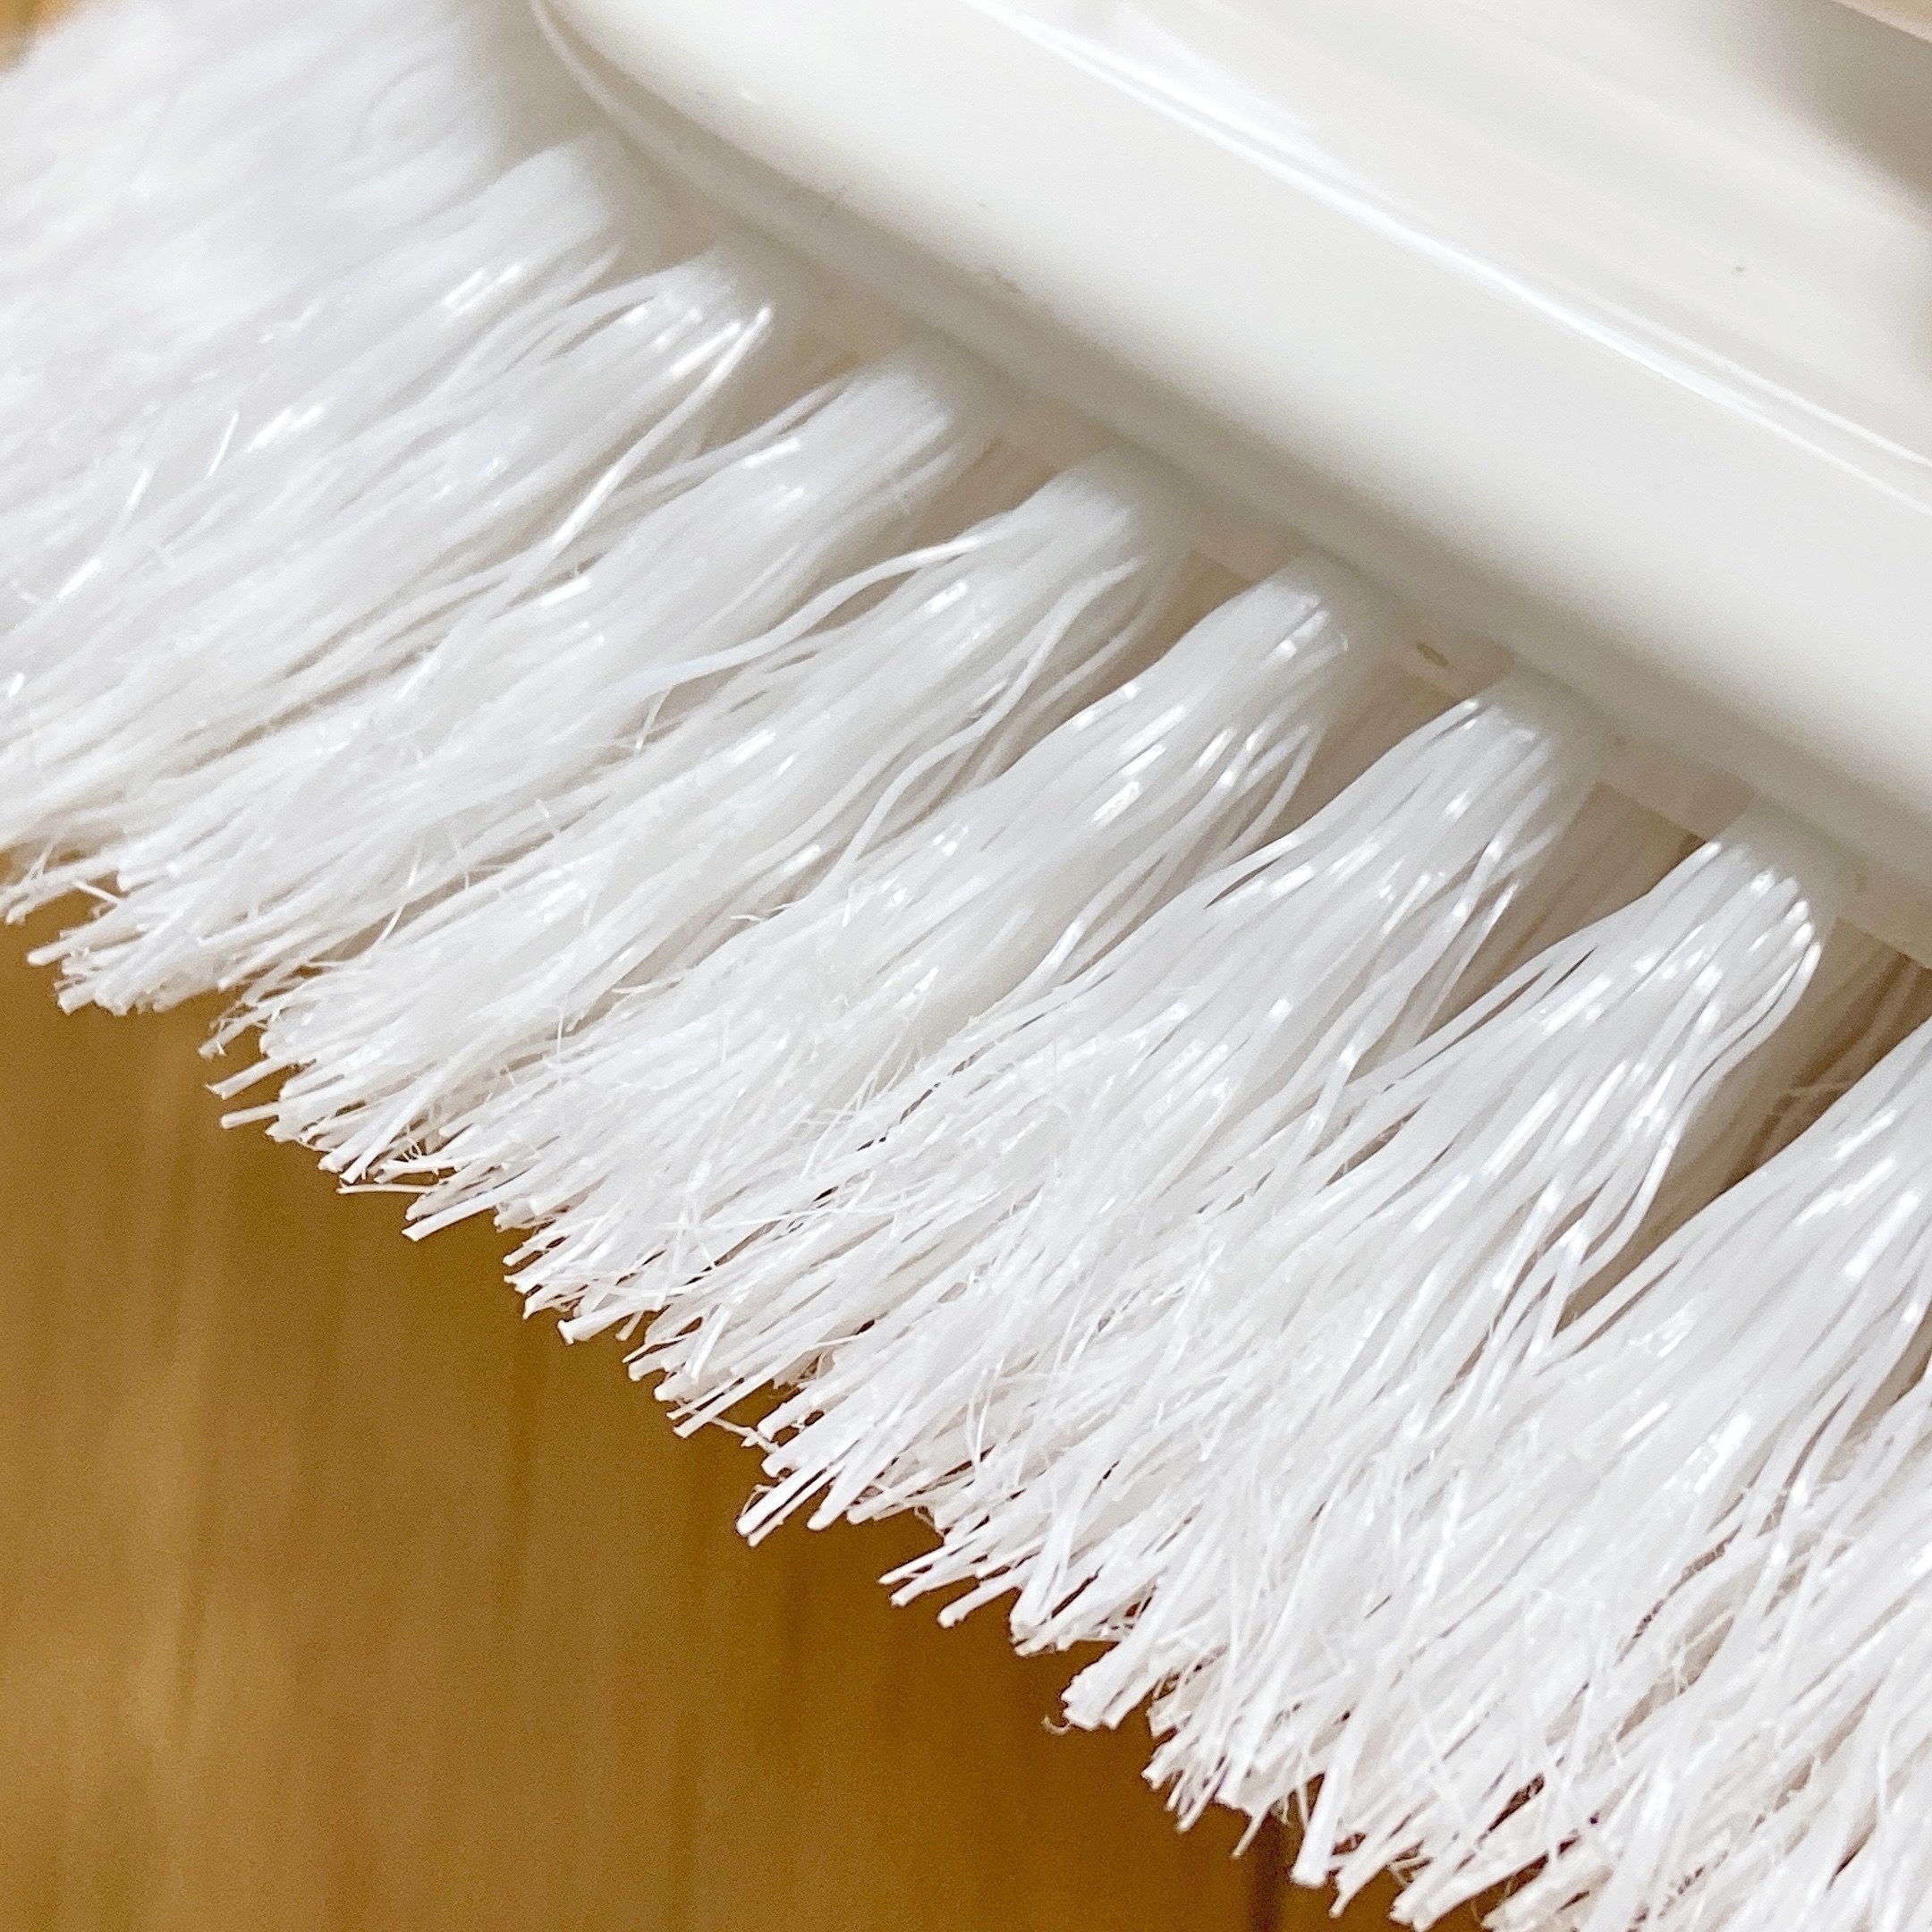 NITORI（ニトリ）の人気お掃除グッズ「ゴムの力で汚れを落とすバスブラシ」便利なアイテムでお風呂掃除におすすめ